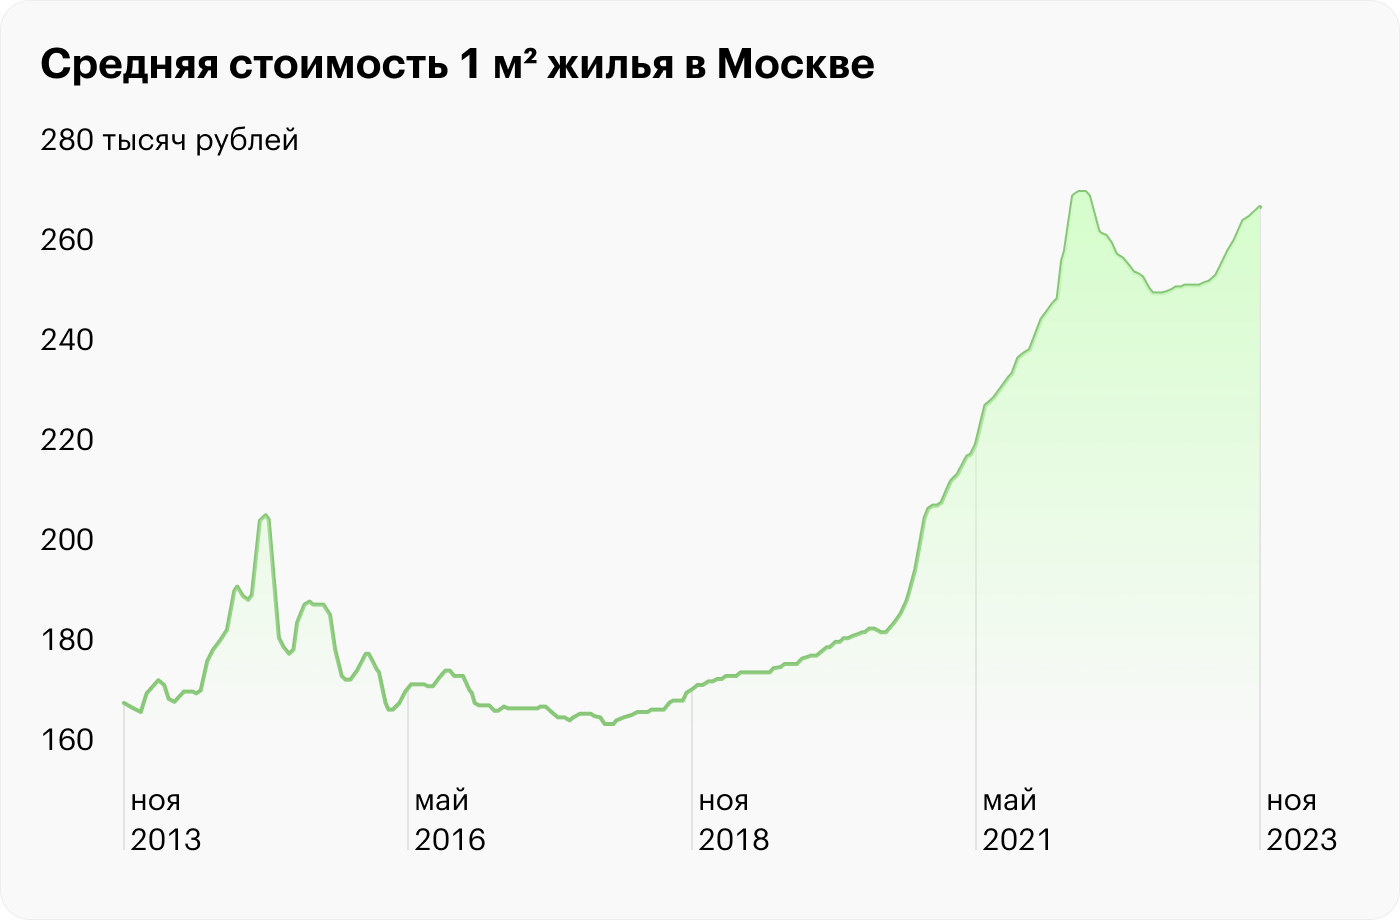 С 2013 по 2023 цены на жилье в Москве выросли примерно на 100 000 ₽ за 1 м². Источник: irn.ru